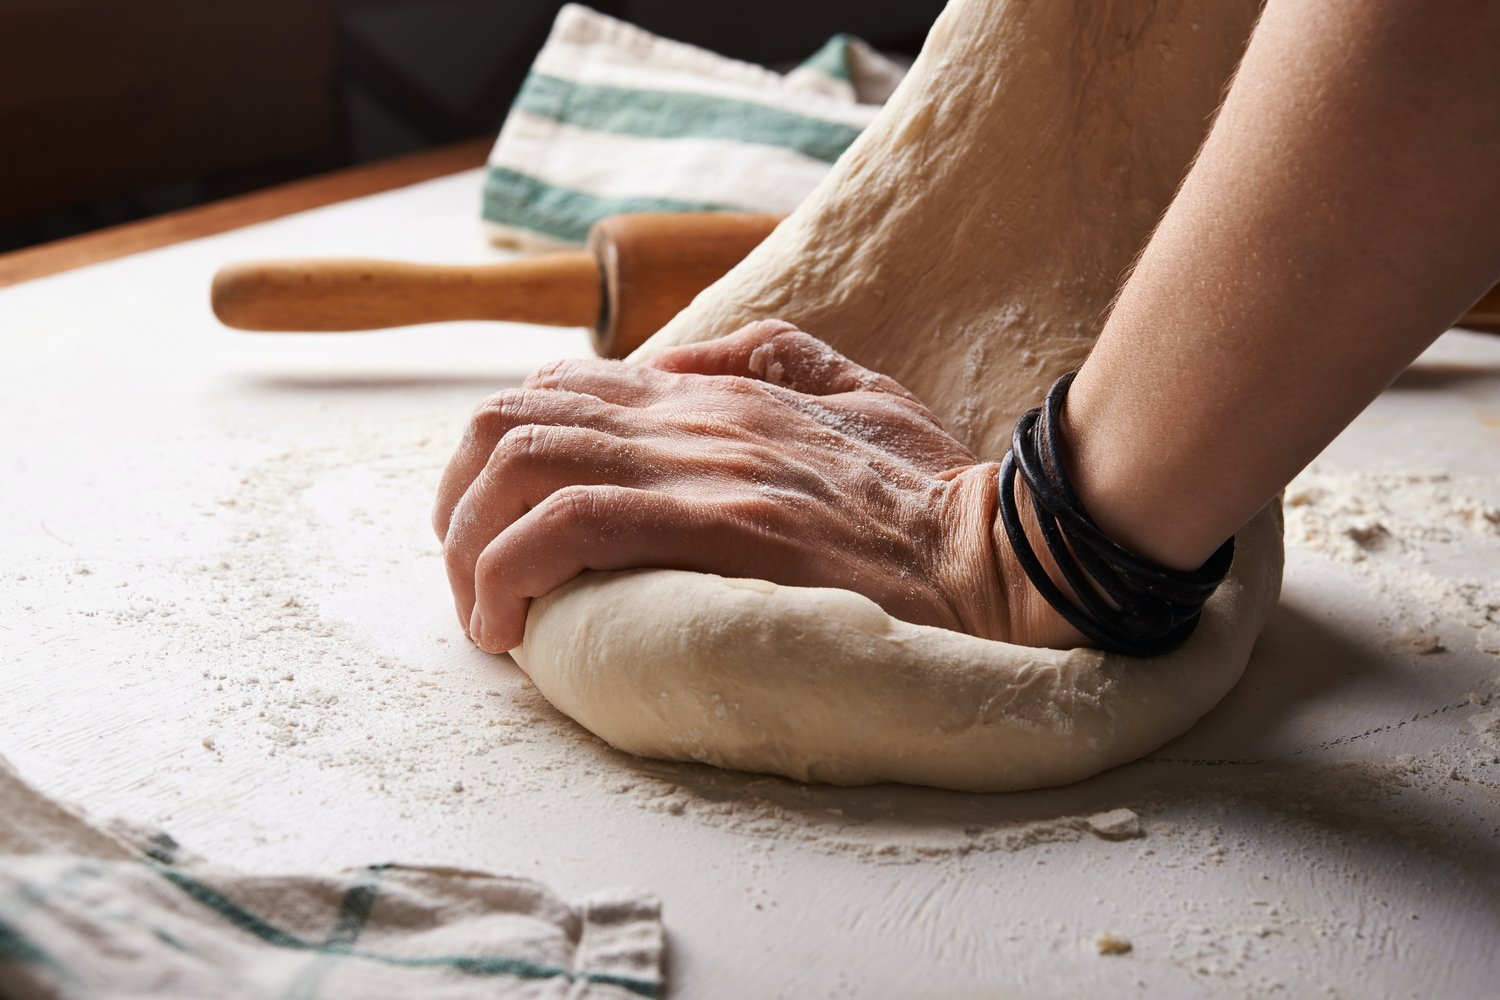 hands kneeing dough